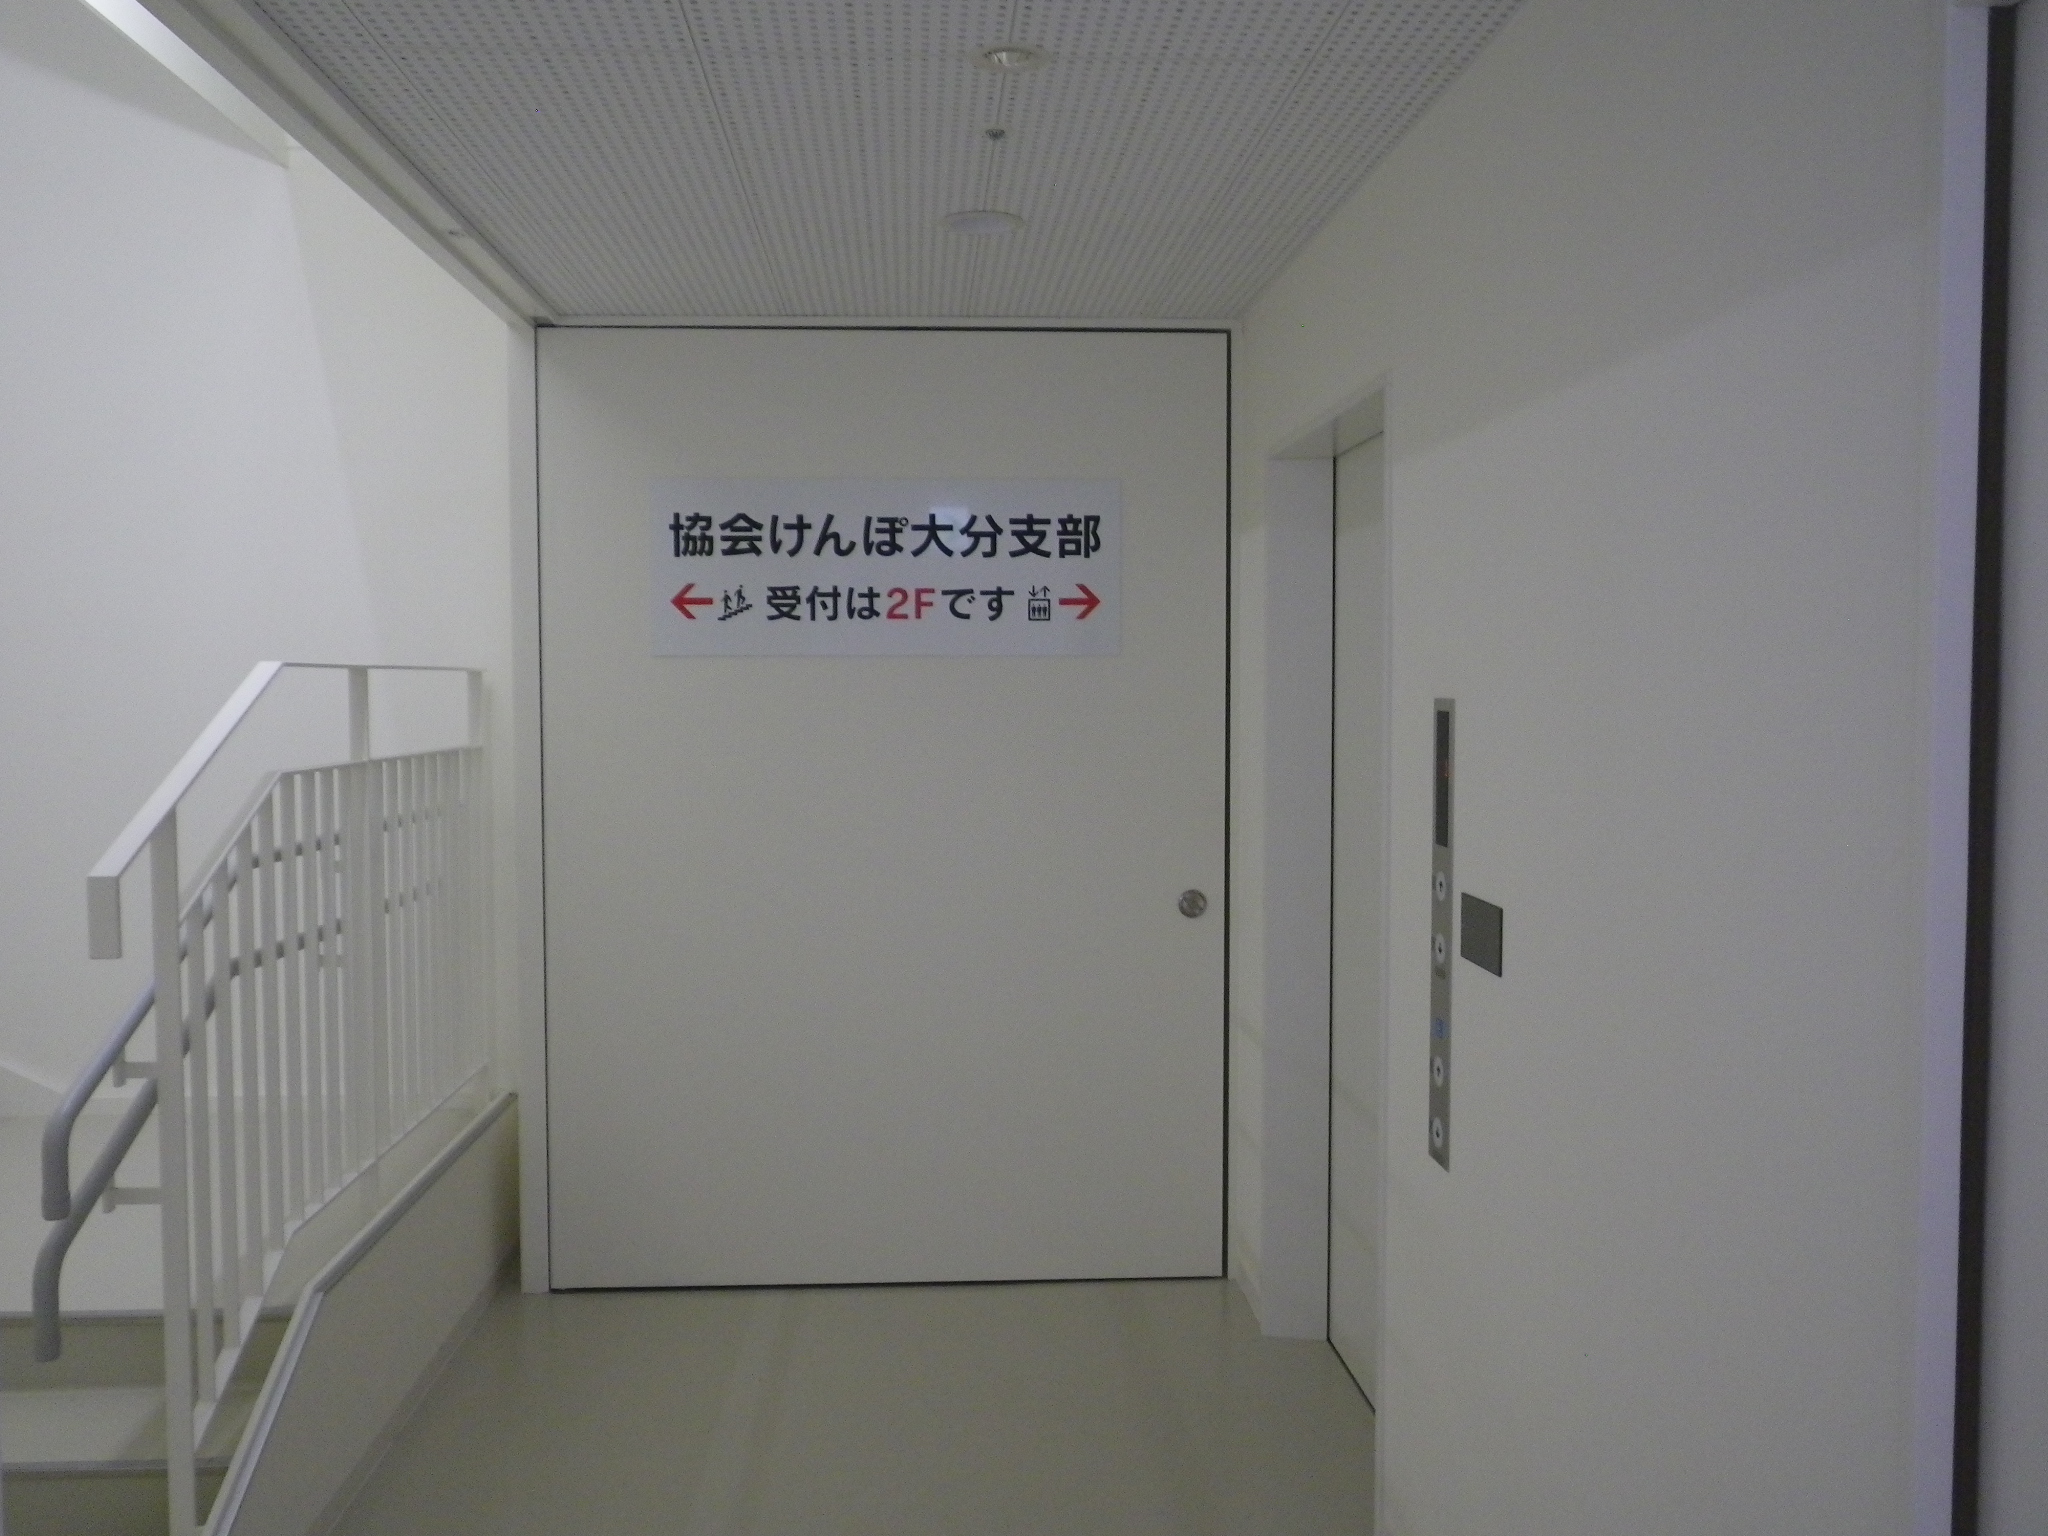 協会けんぽ大分支部入口から中に入ると、左手に階段、右手にエレベータがございます。